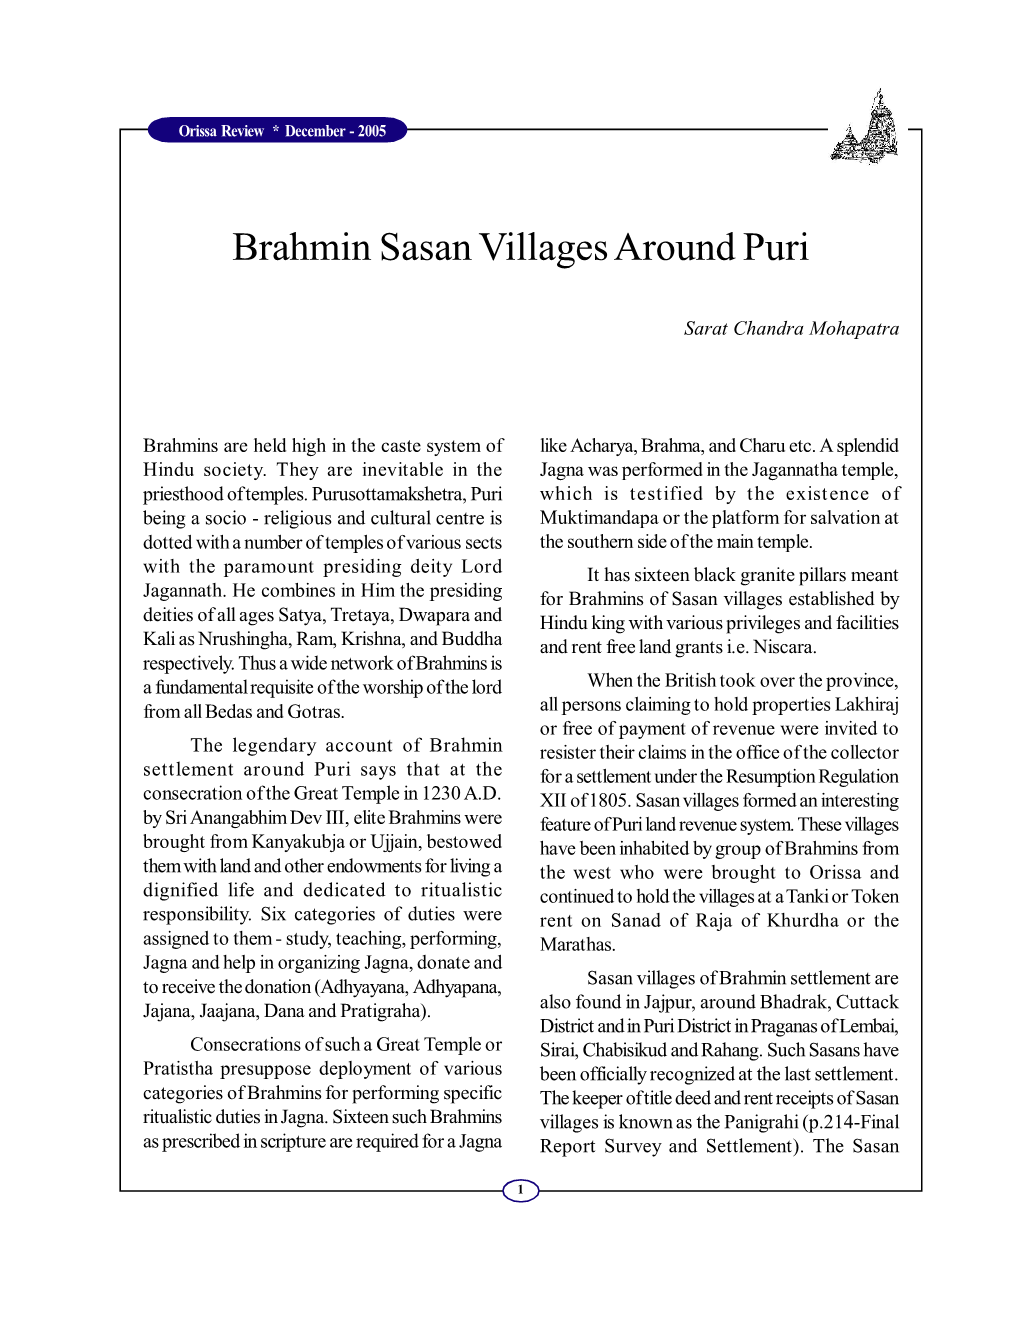 Brahmin Sasan Villages Around Puri